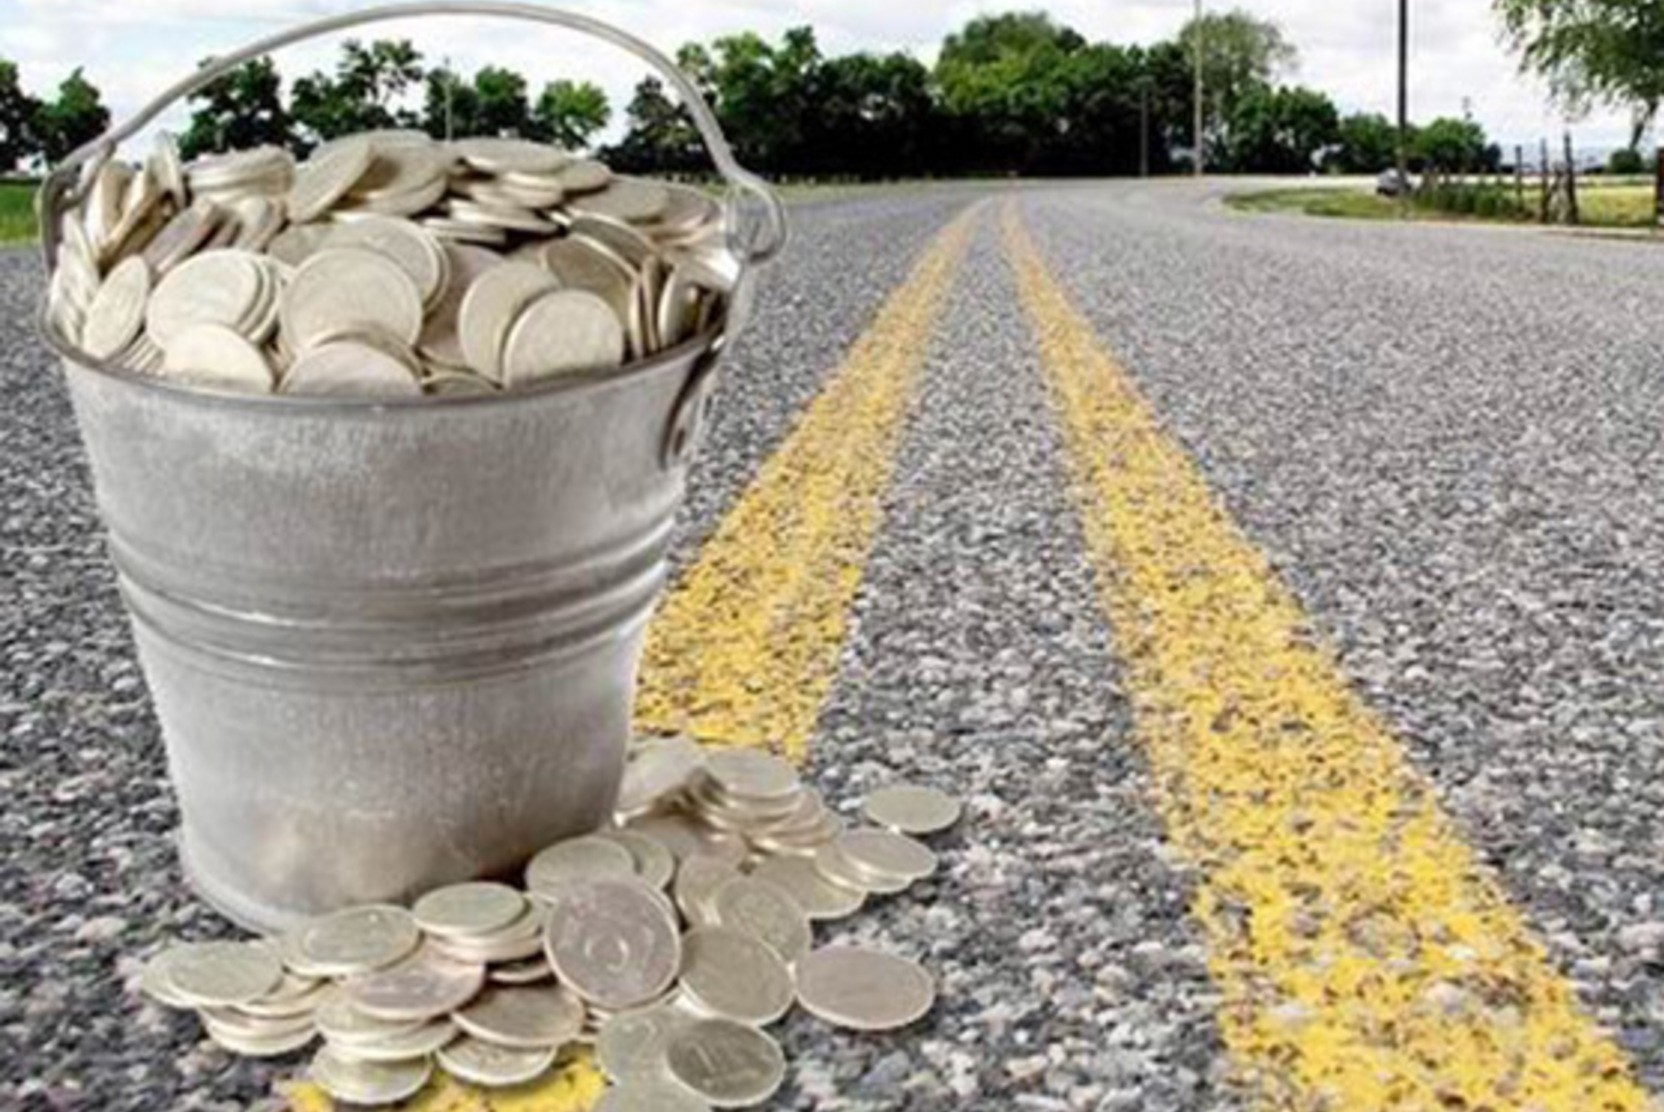 Финансовые нарушения в сфере строительства дорог выявили госаудиторы в СКО